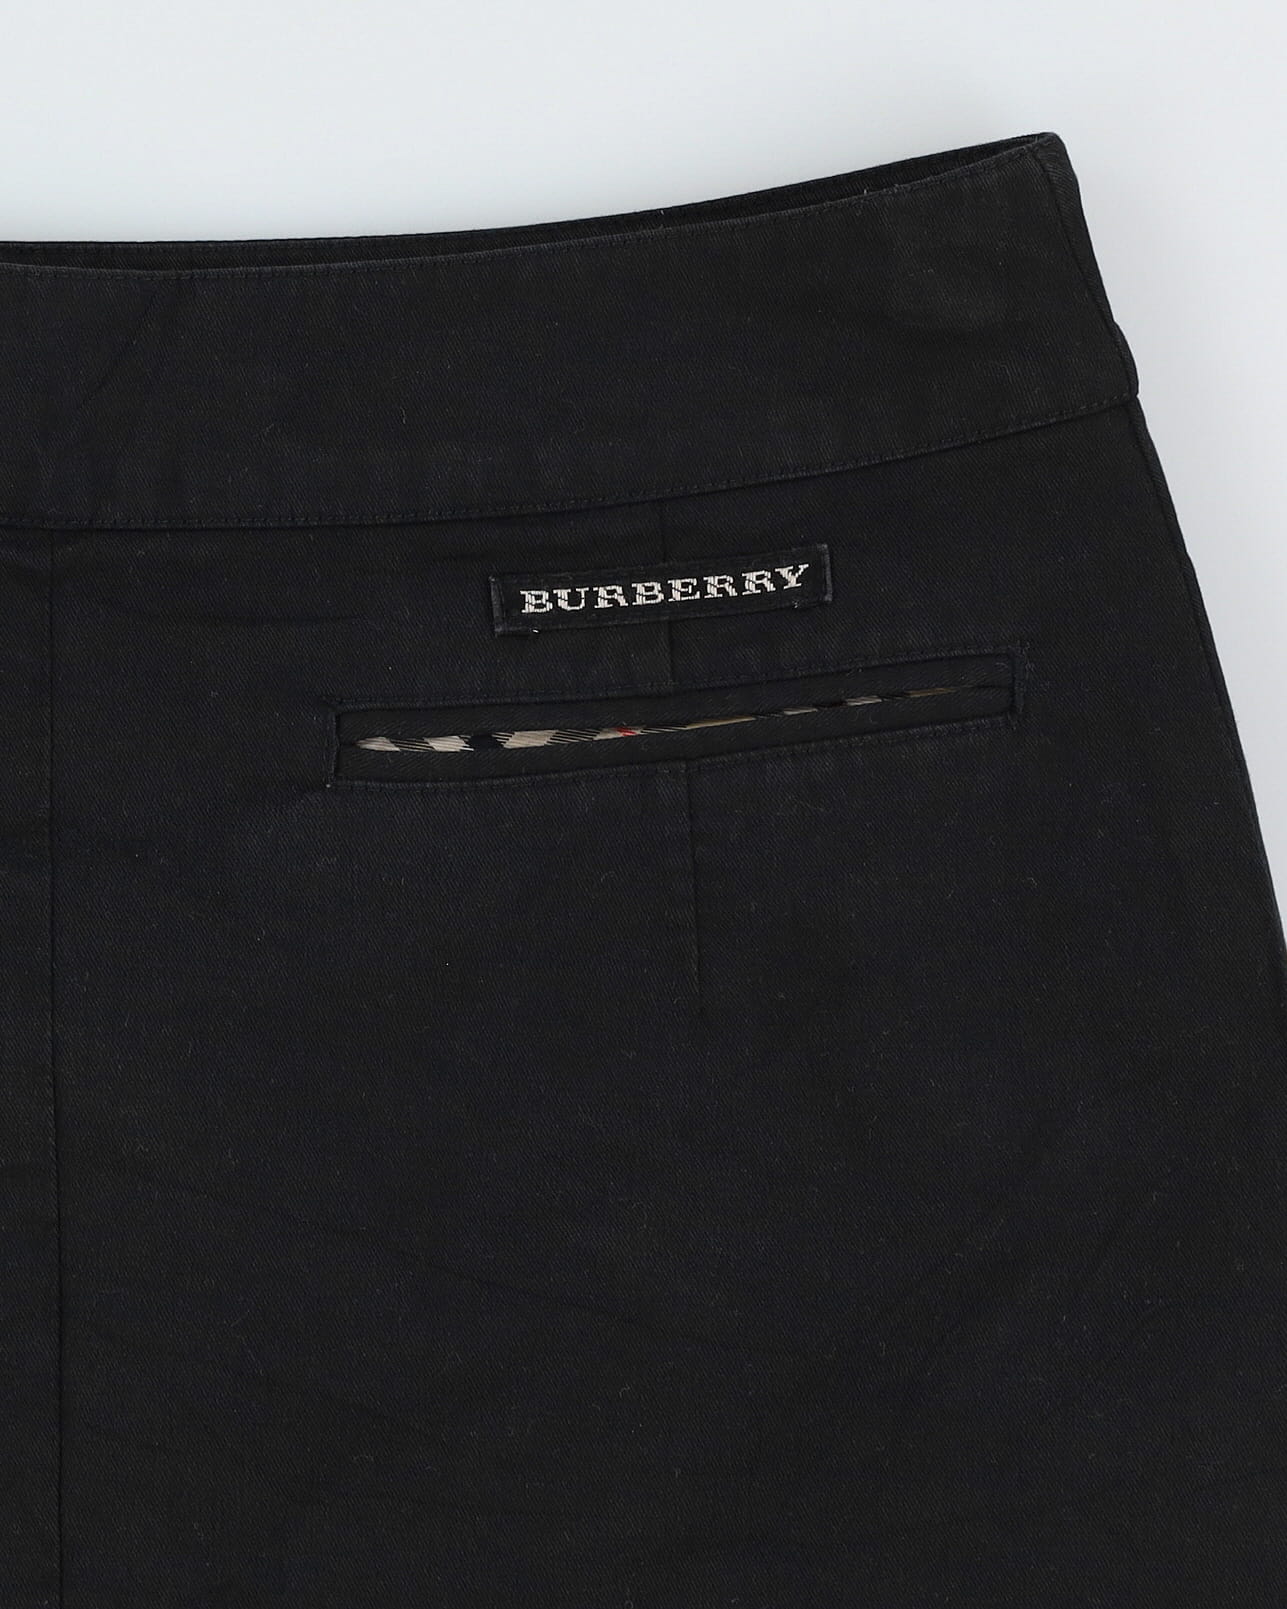 Burberry Black Cotton Mini Skirt - S